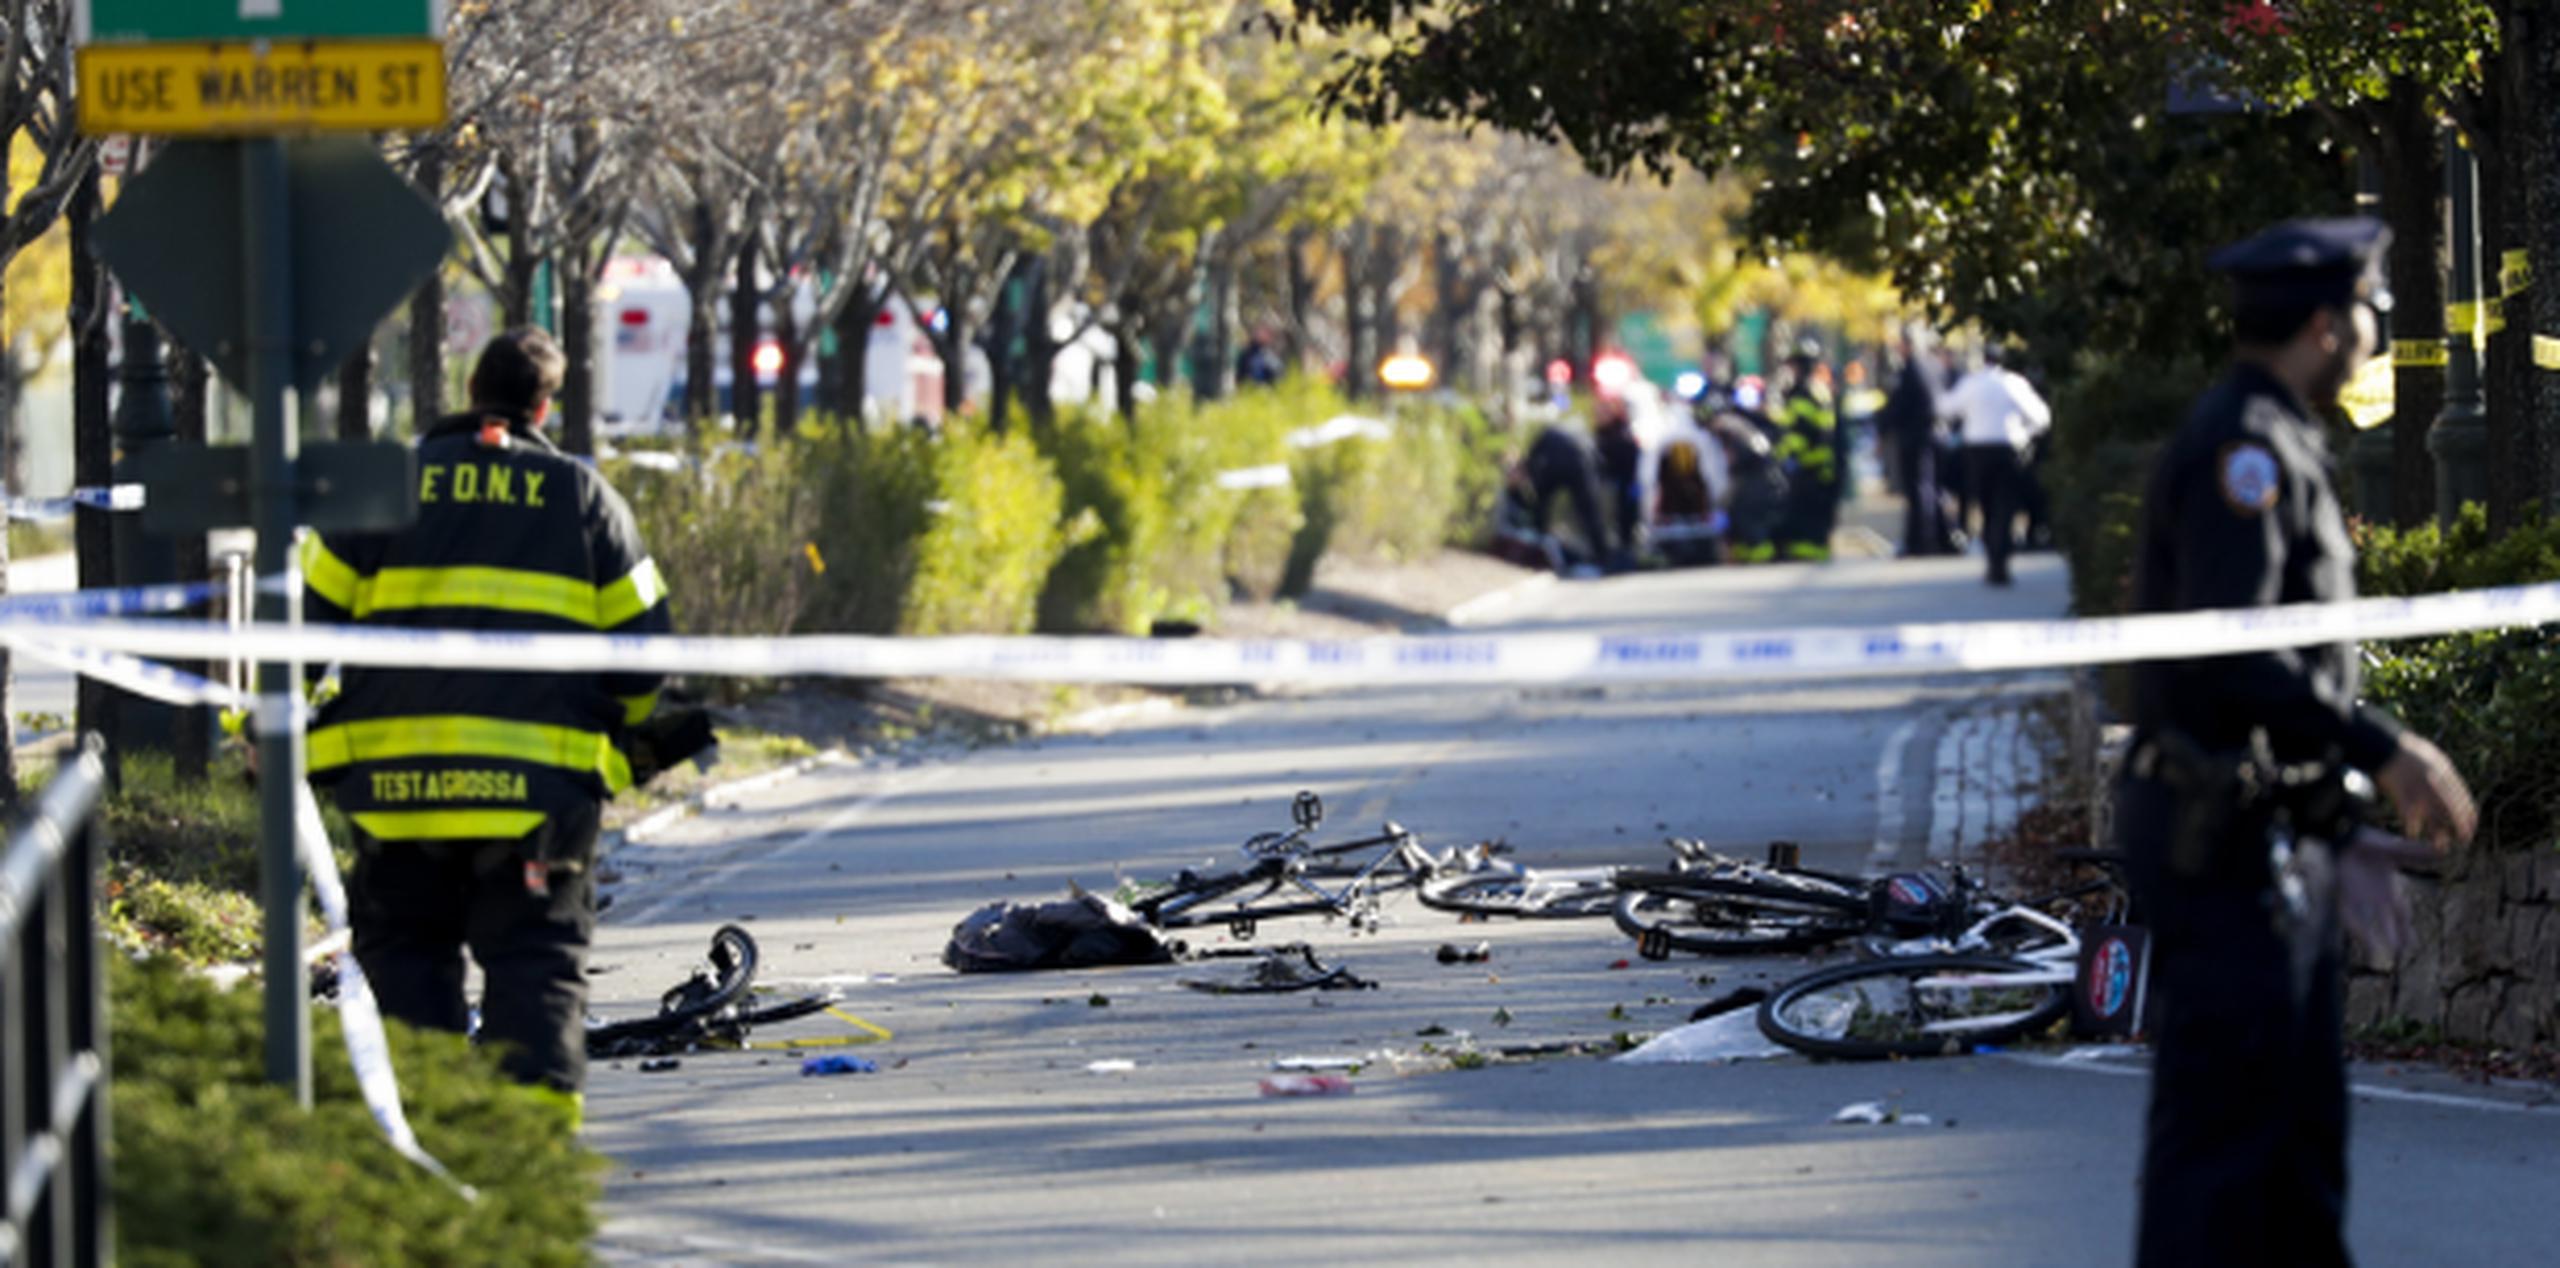 Las víctimas del atentado terrorista avanzaban por una vía para bicicletas cuando fueron embestidos por la camioneta usada para el ataque. (EFE/JUSTIN LANE)
